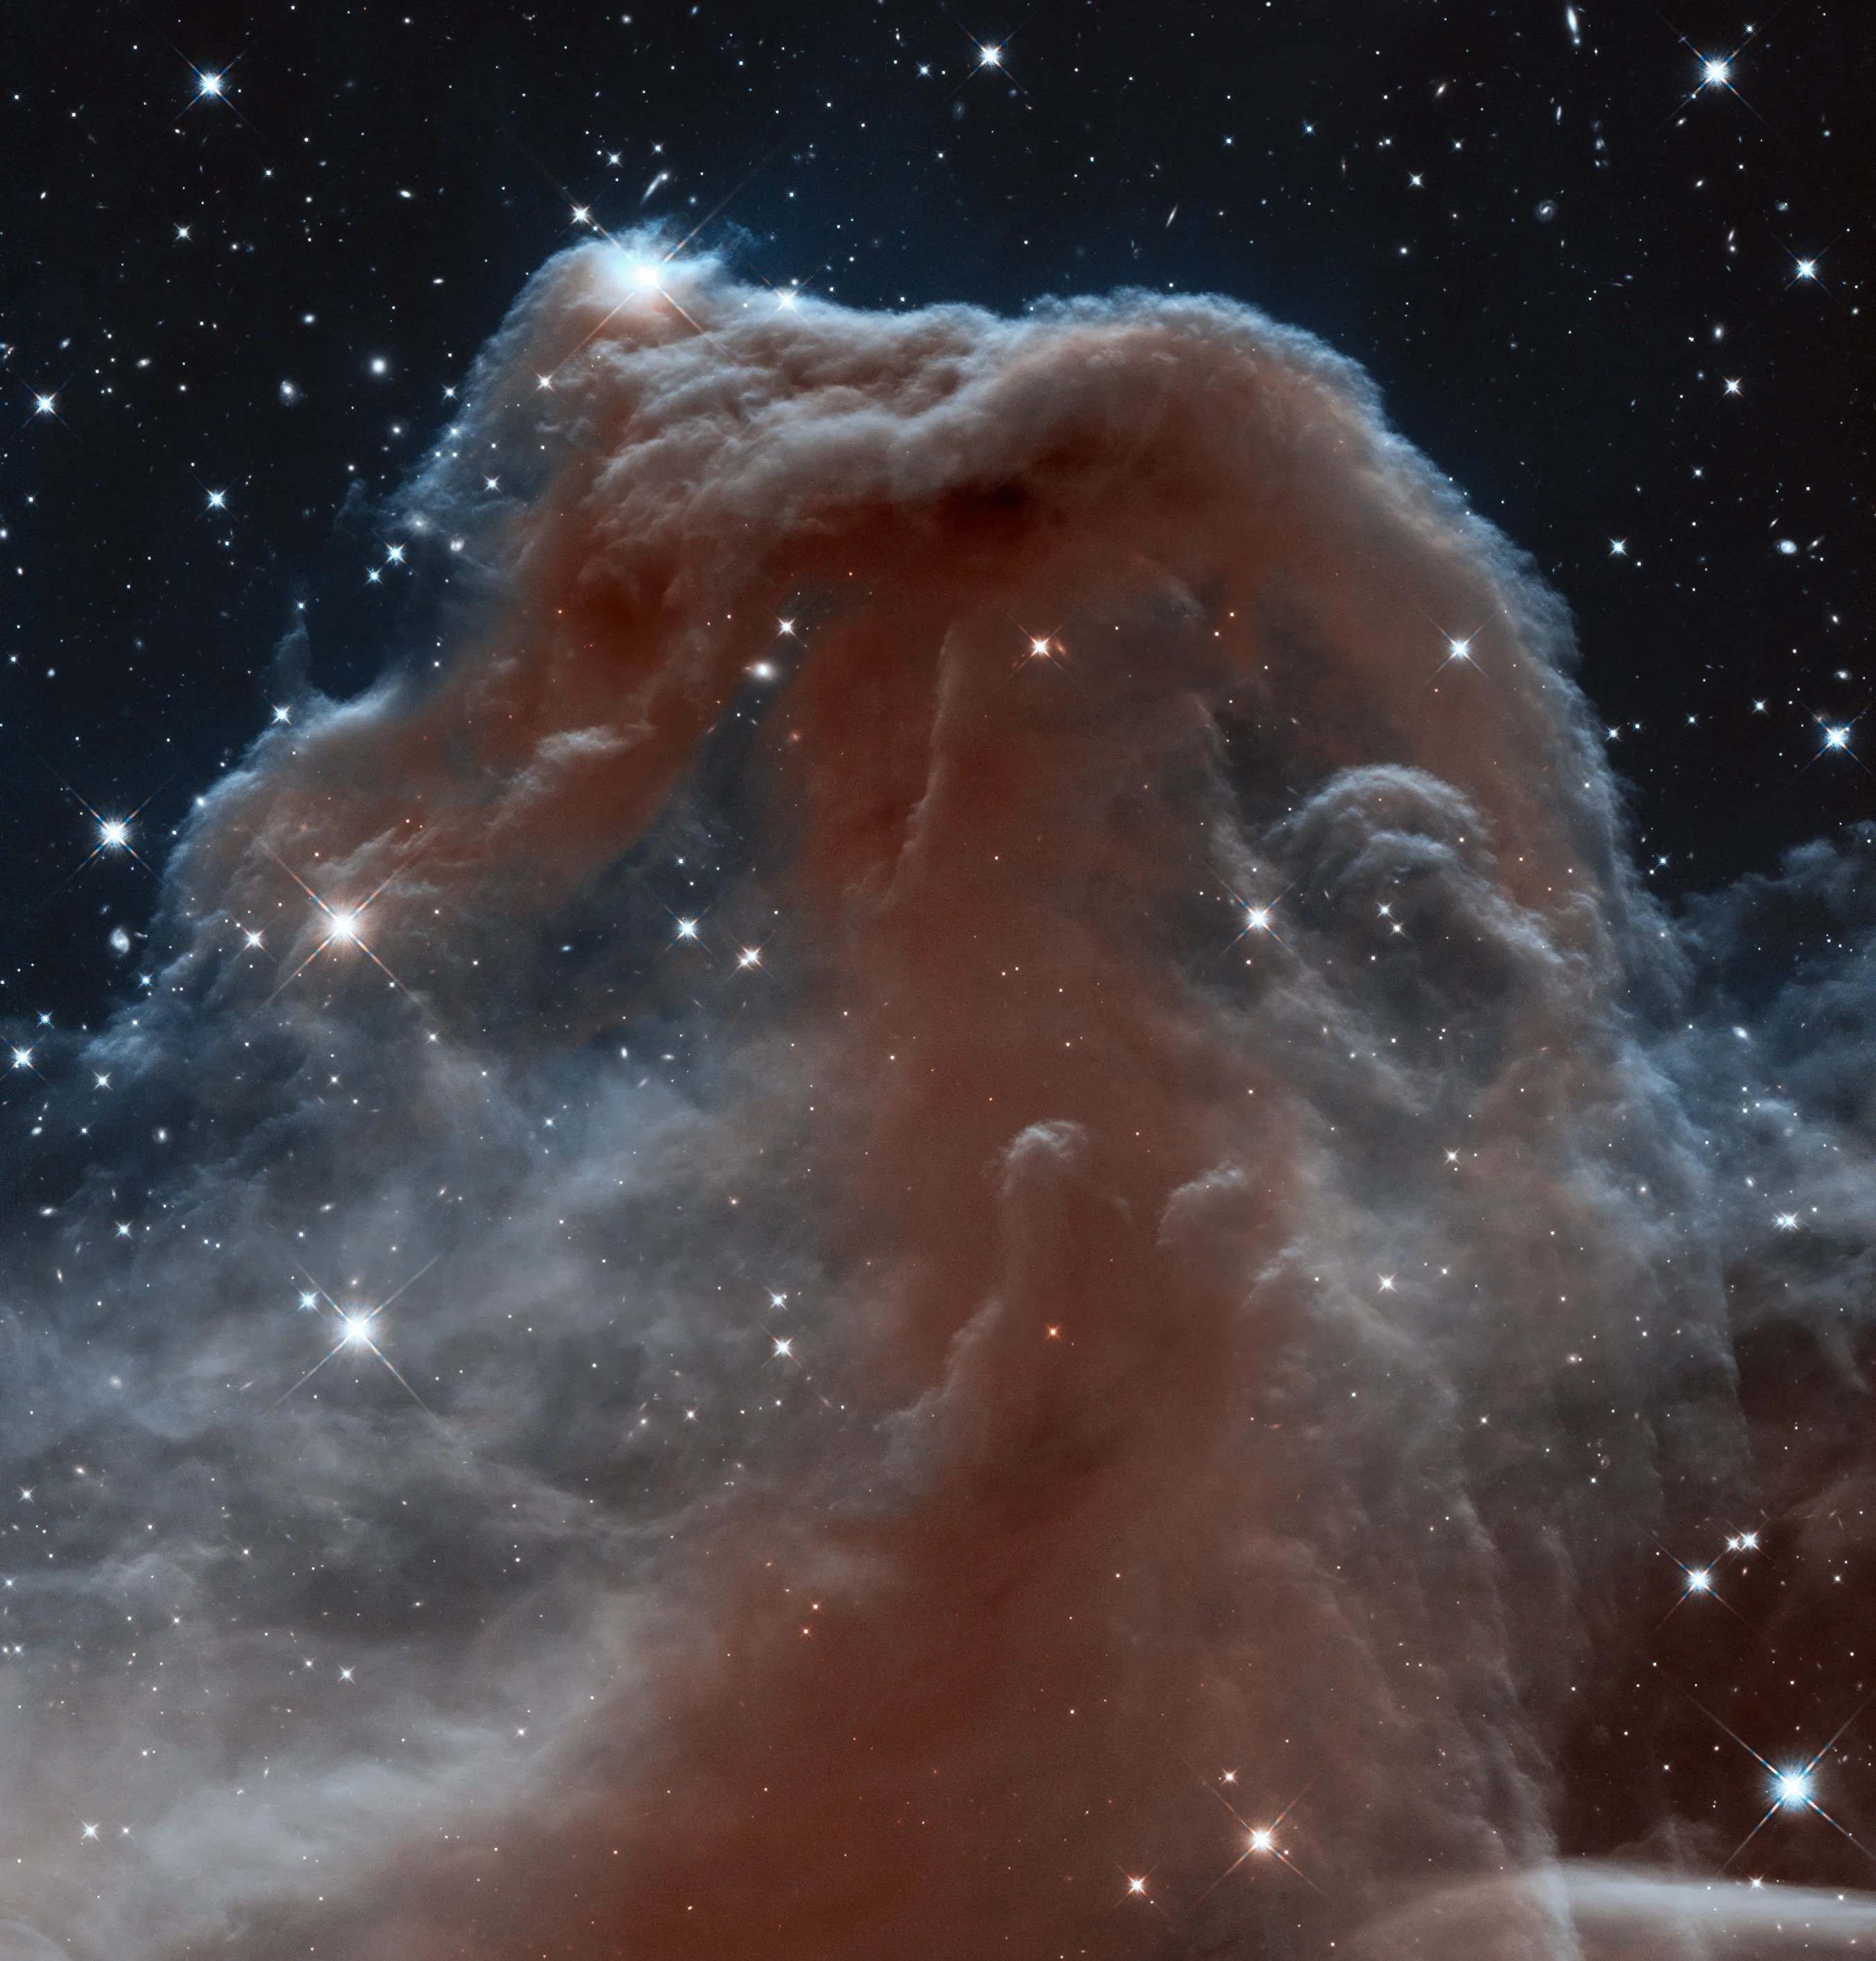 Horsehead Nebula in infrared